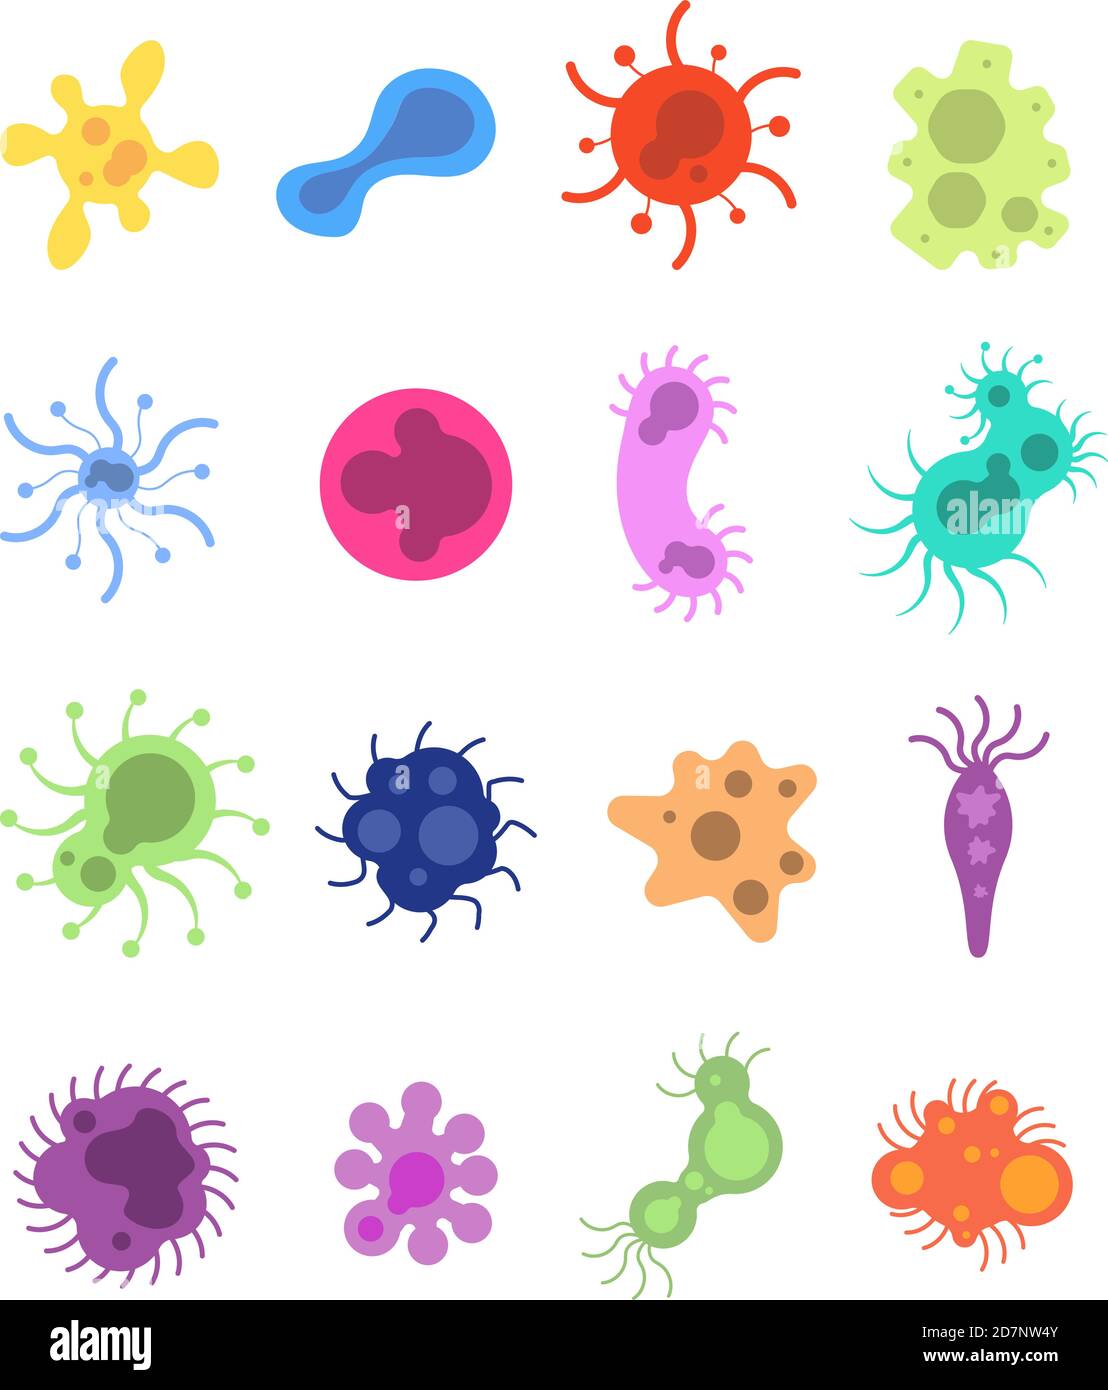 Ensemble de germes. Virus de la grippe cellules de toxine microbes amibe épidémiologie bactéries maladie germe grippe cellule microbiologie ensemble de vecteurs isolés. Amibe et grippe, cellule et maladie, illustration de la bactérie de la maladie Illustration de Vecteur